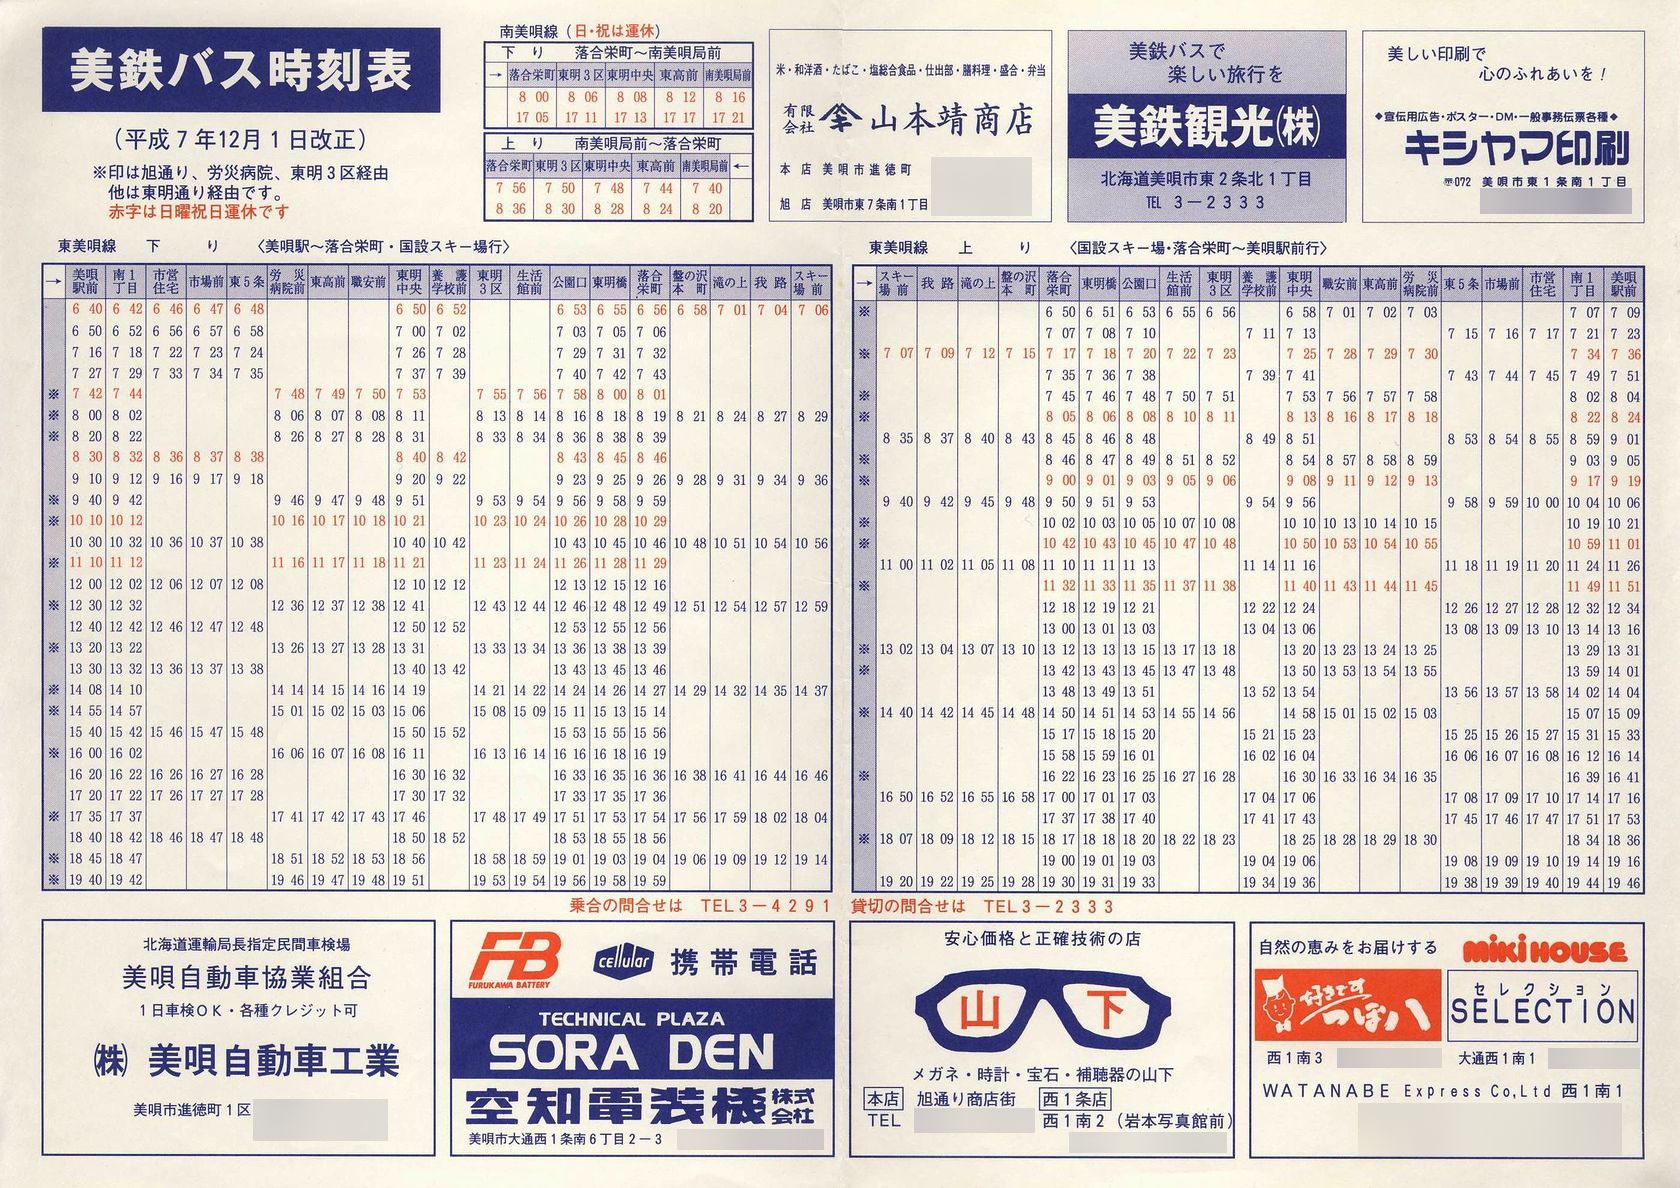 1995-12-01改正_美鉄バス_美唄地区時刻表